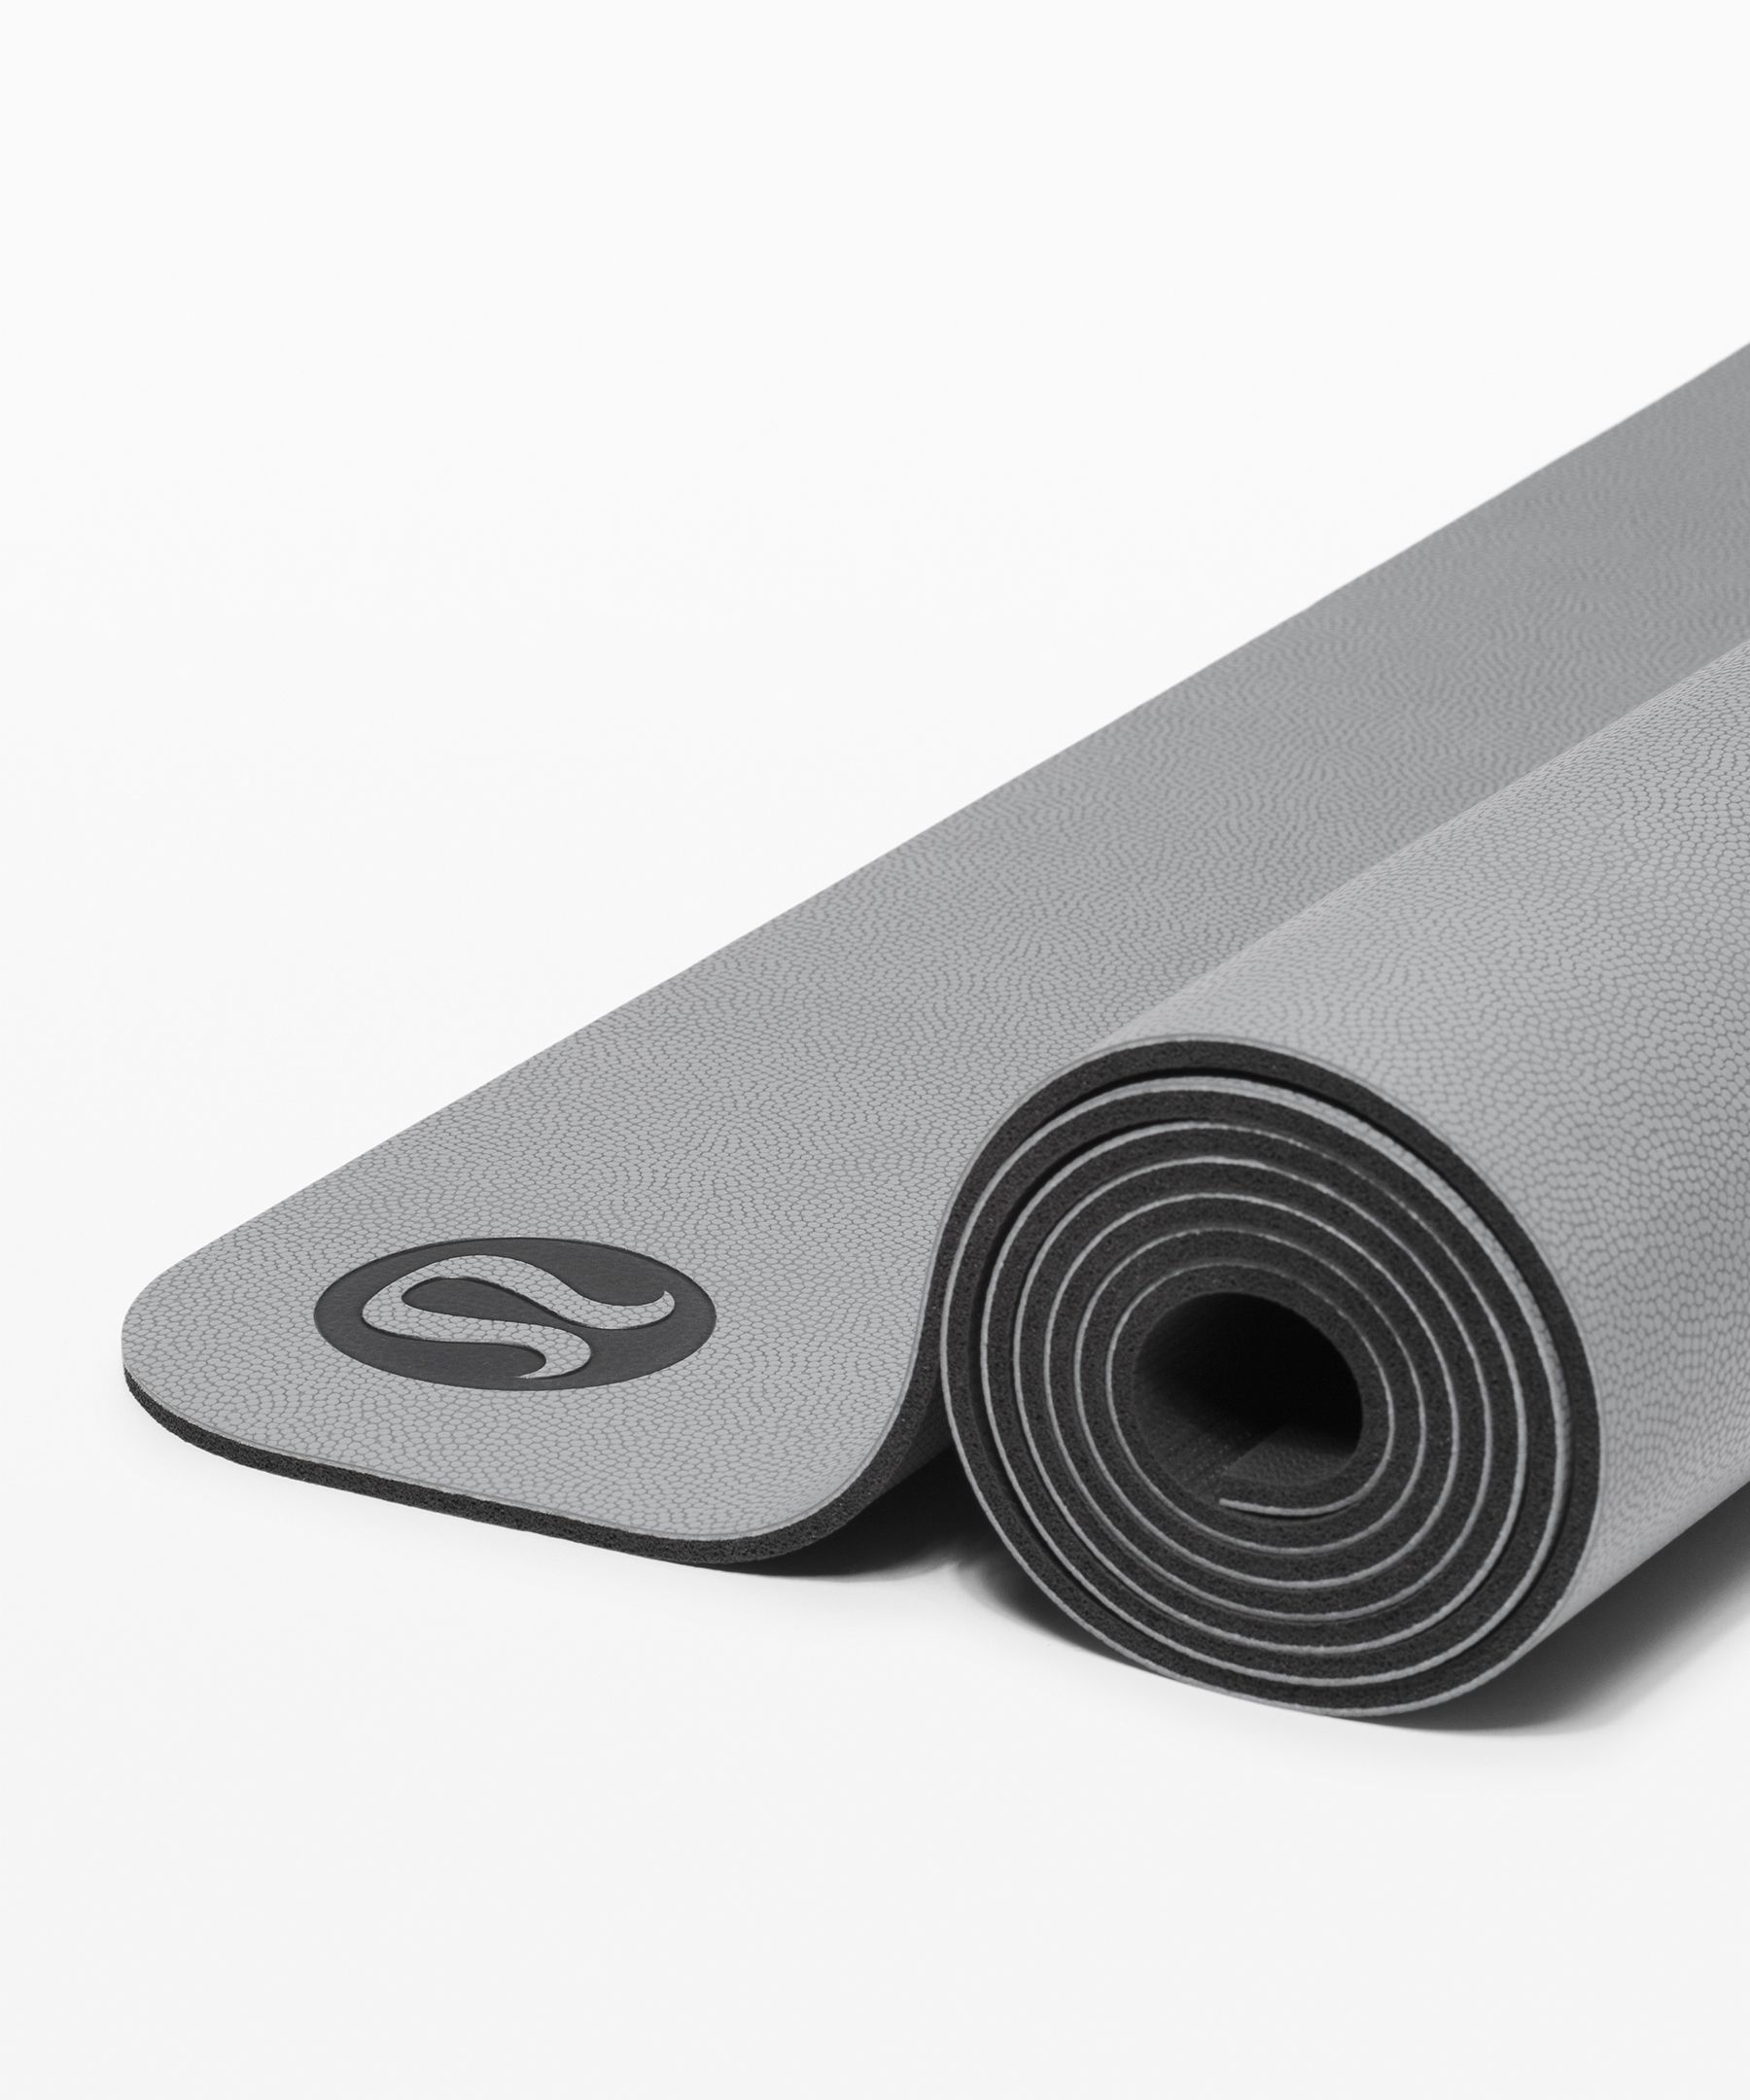 lululemon black yoga mat